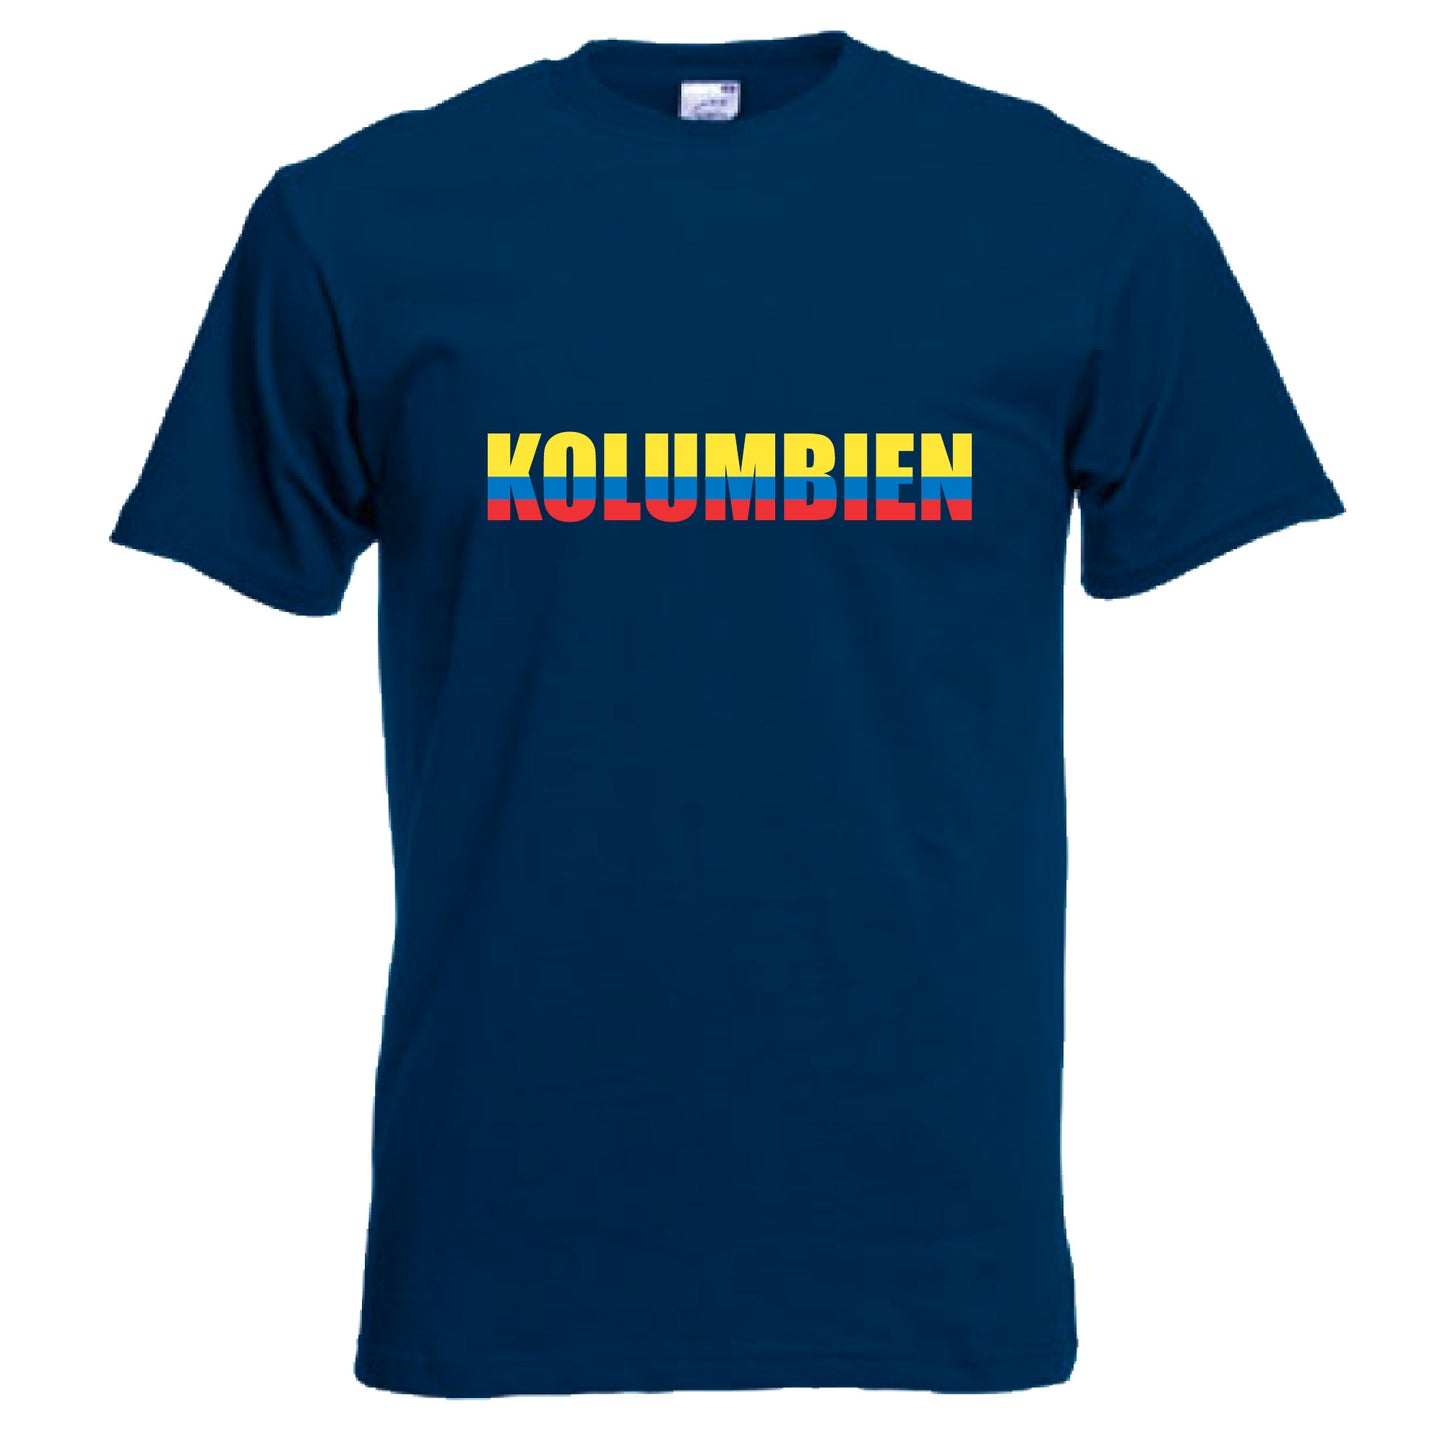 INDIGOS UG - T-Shirt Herren - Kolumbien - Schriftzug - Fussball